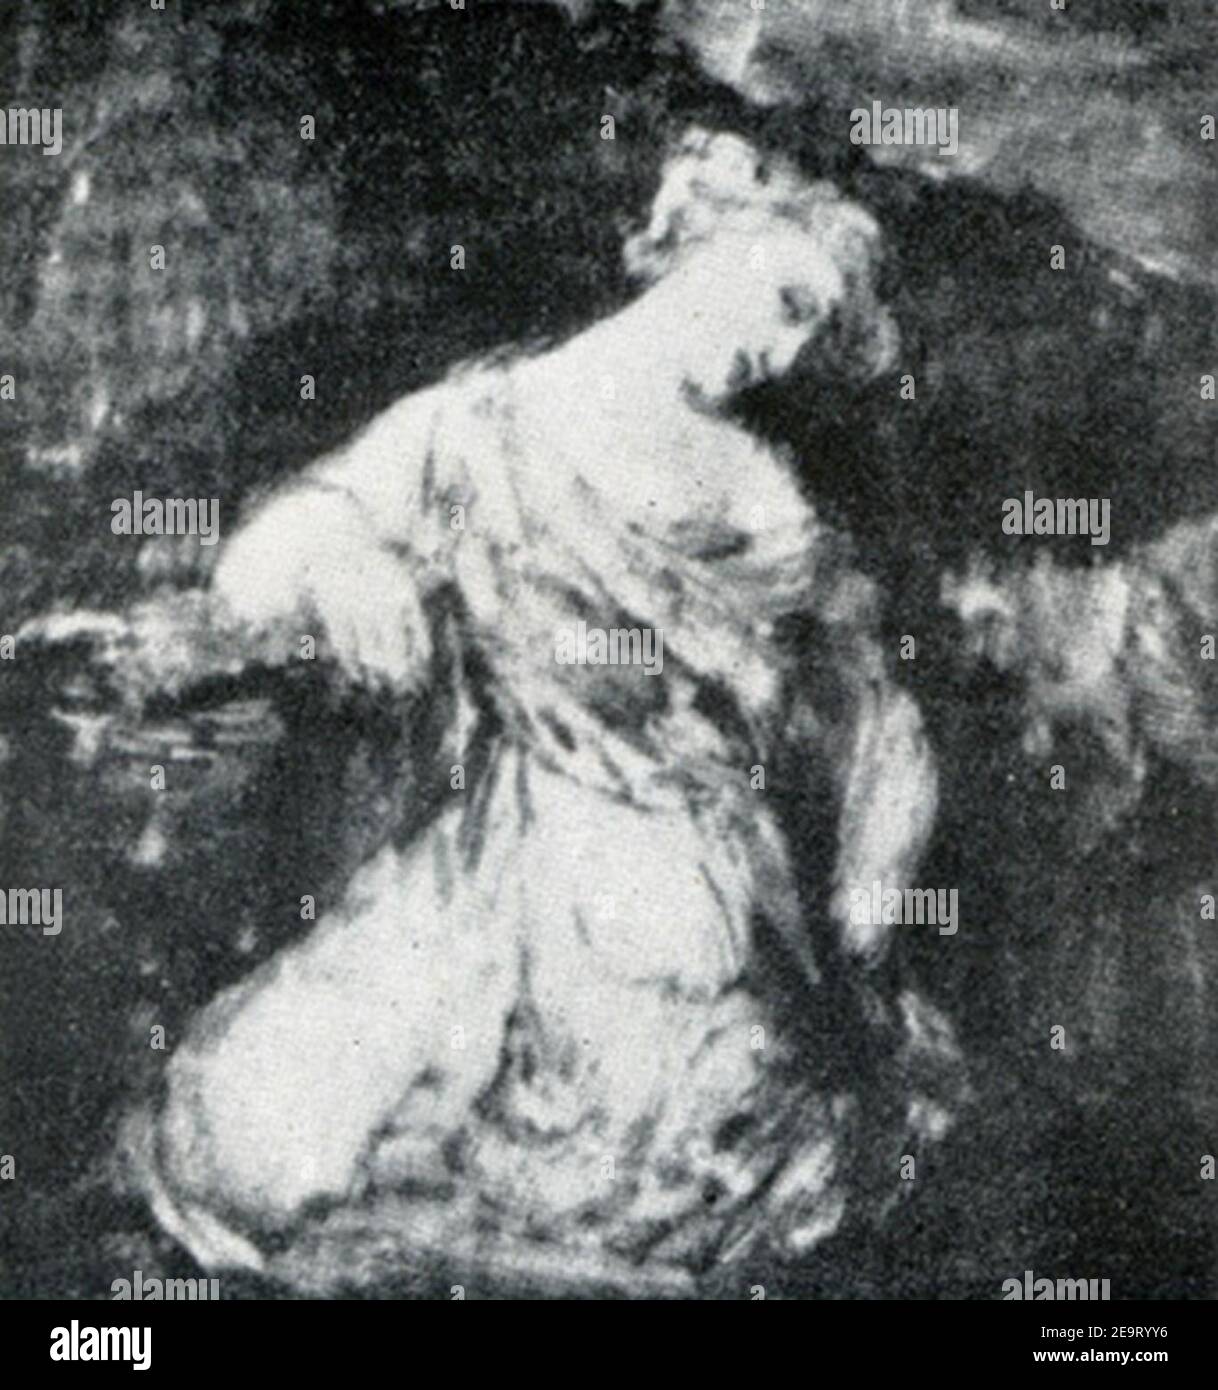 Mujer arrodillada en la oscuridad, Francisco de Goya. Stock Photo